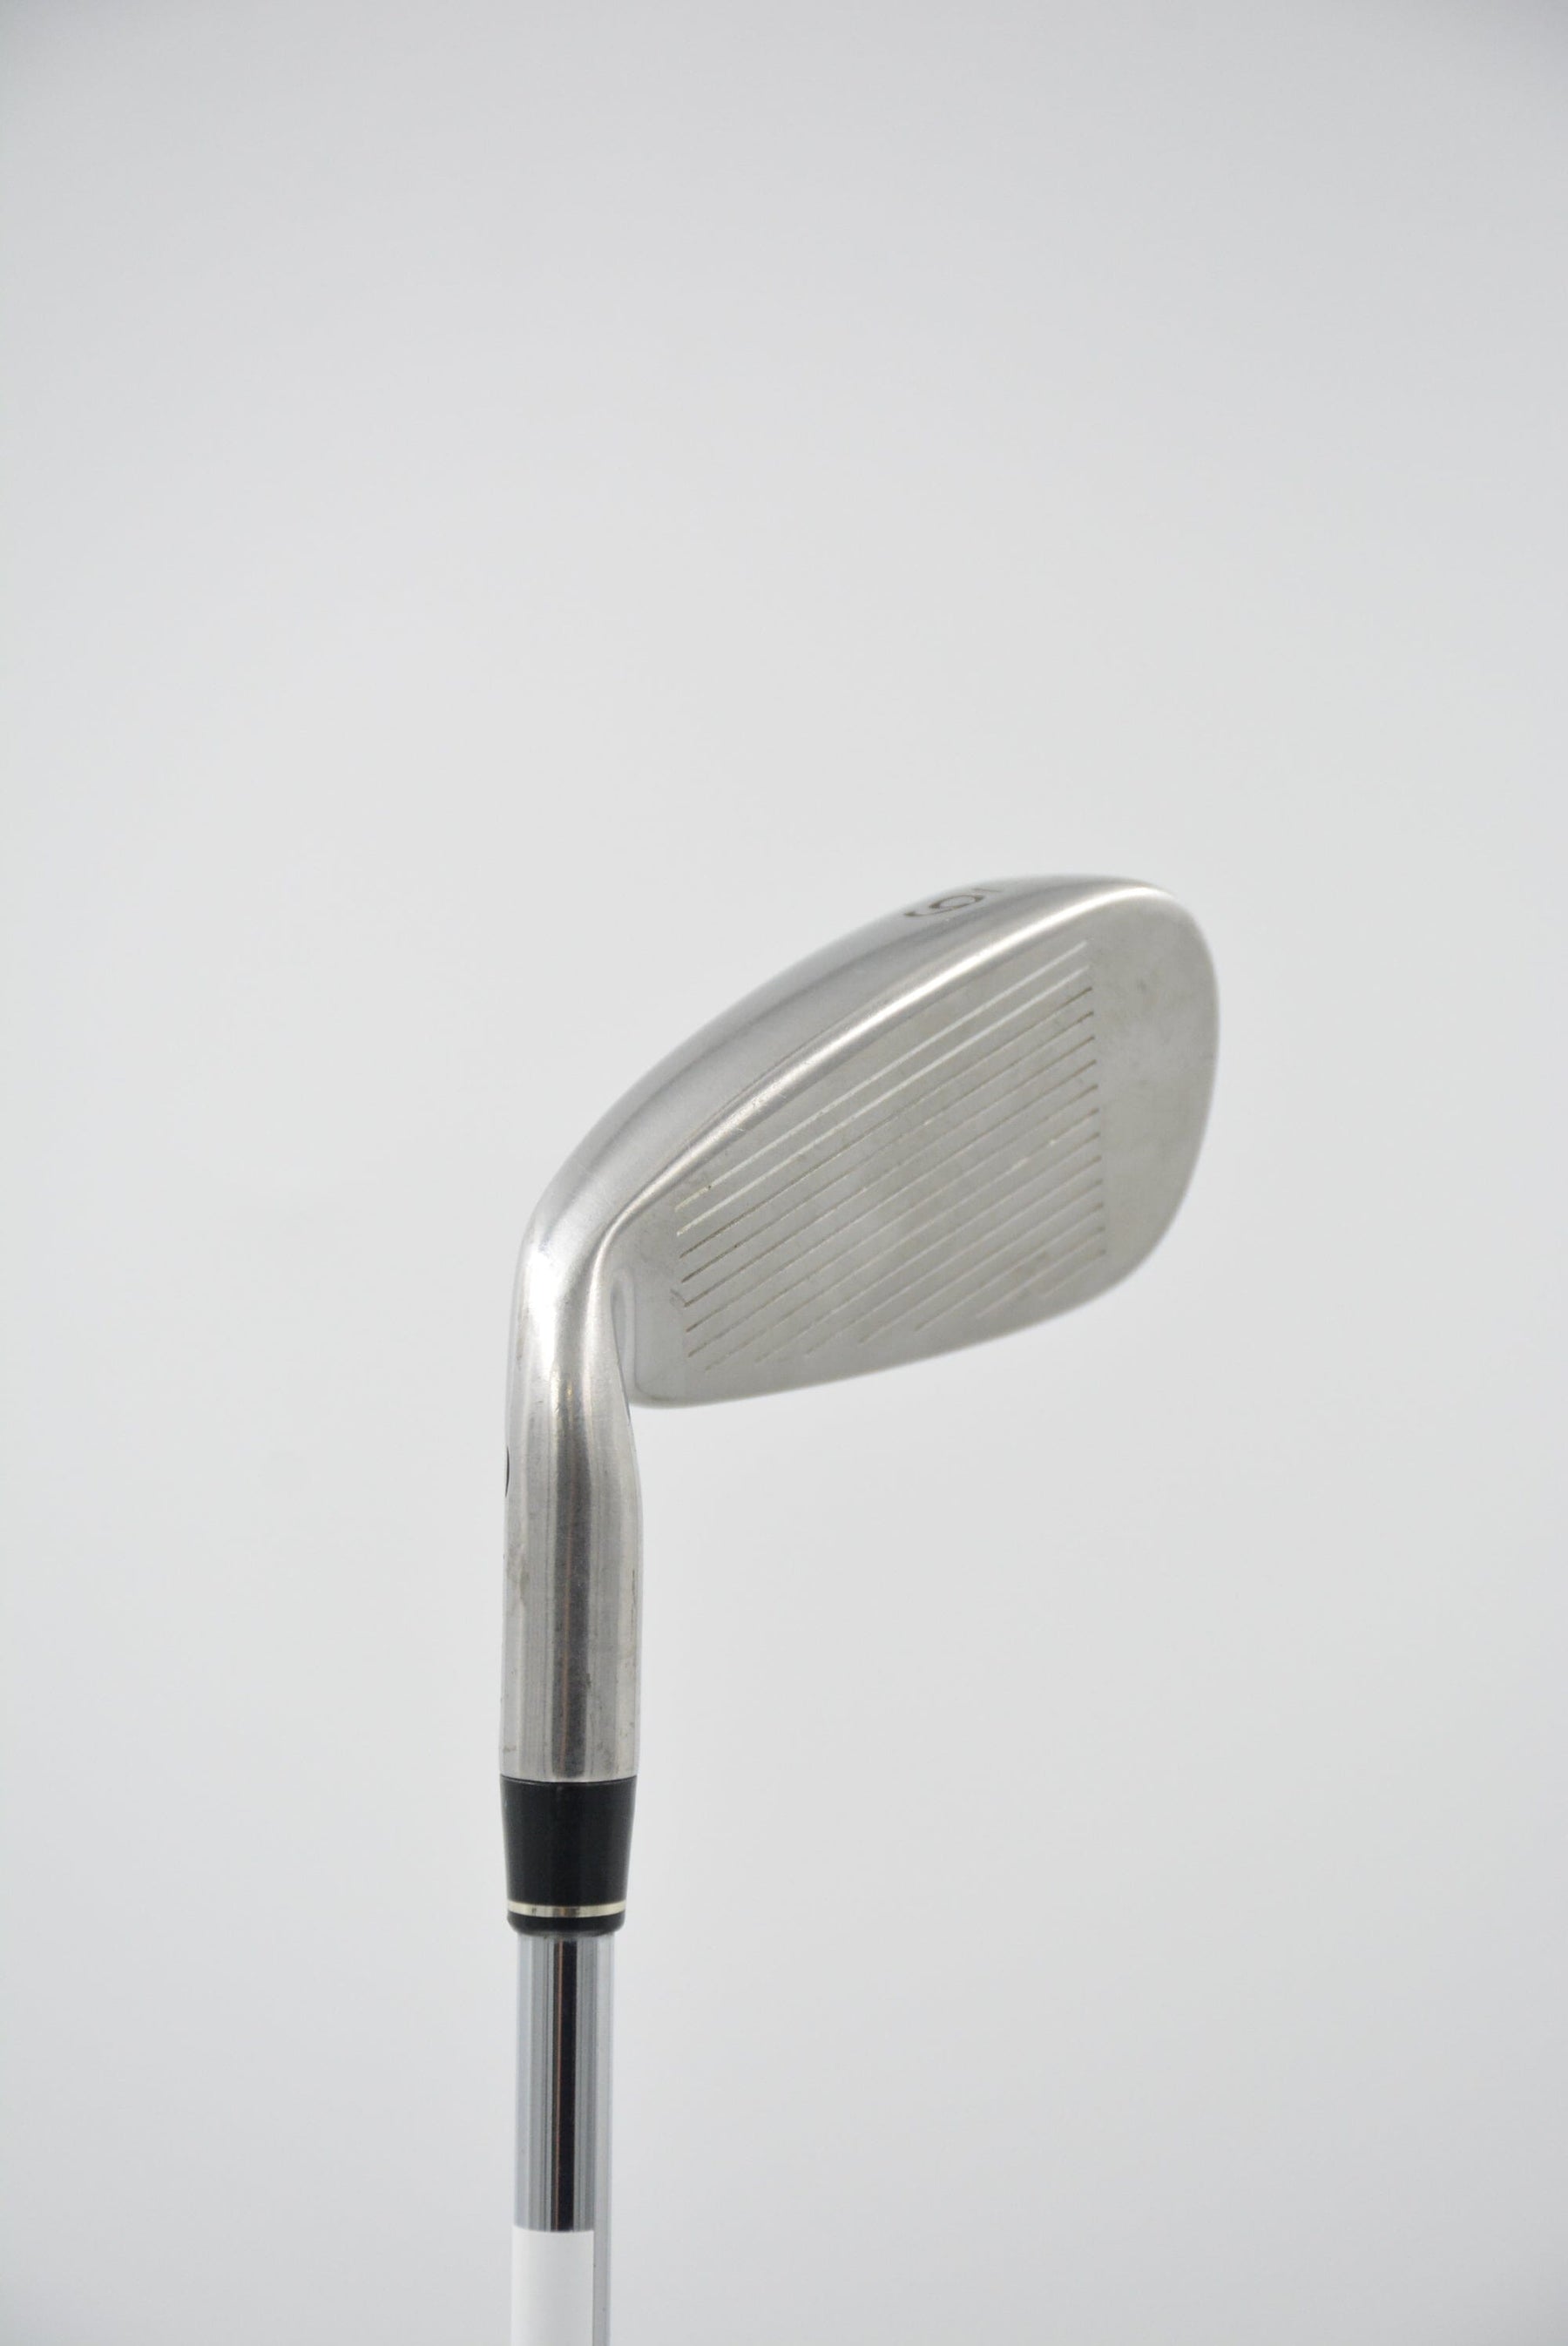 TaylorMade Rac OS 6 Iron S Flex +0.5" Golf Clubs GolfRoots 